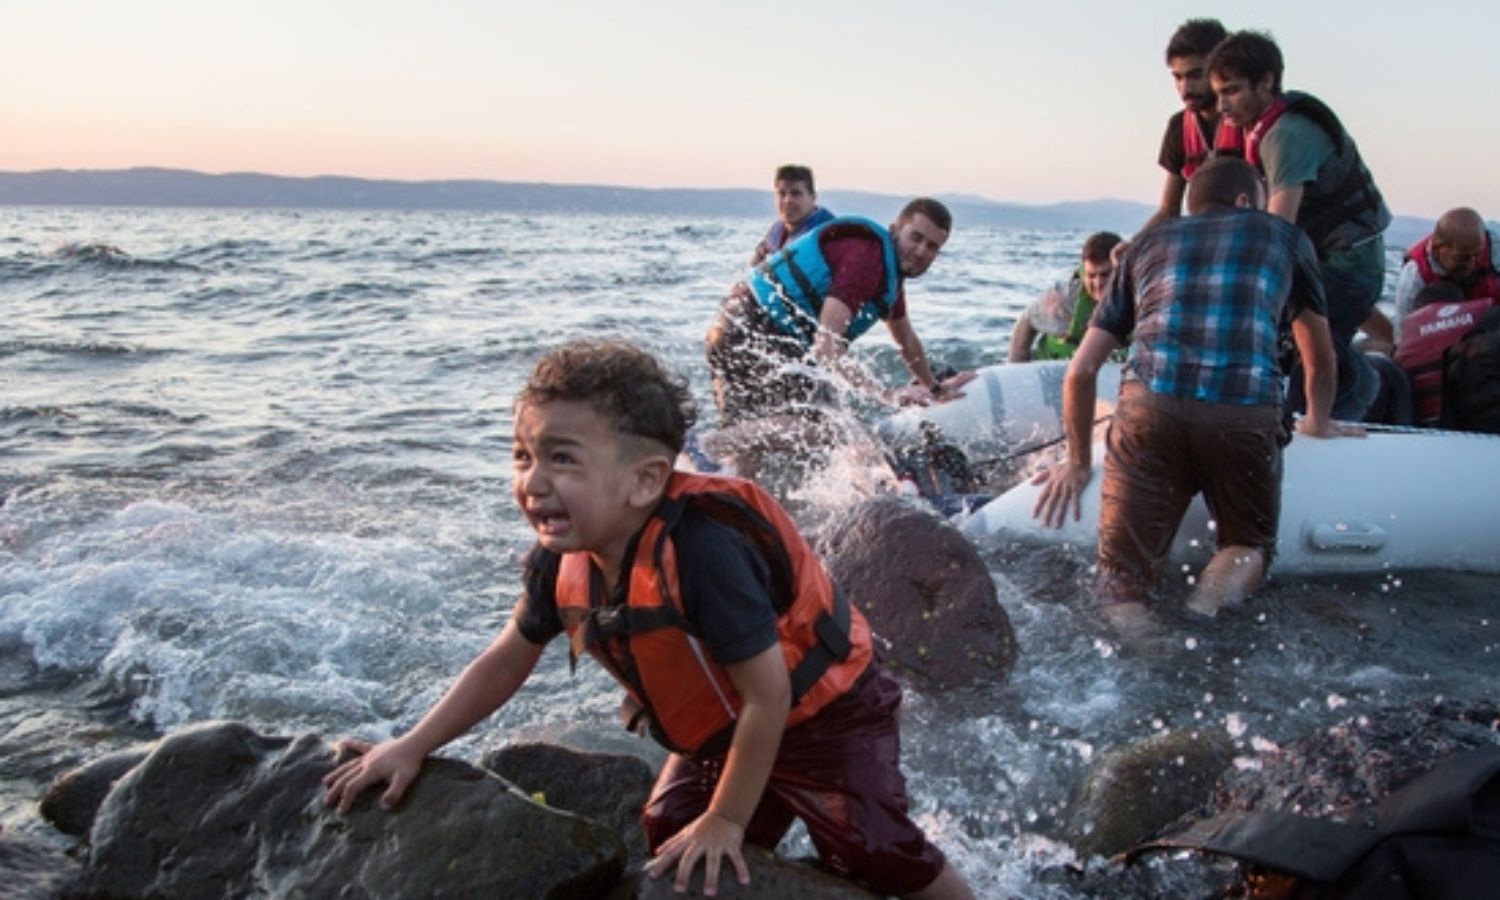 وصول لاجئين سوريين إلى ليسفوس في اليونان (UNHCR)